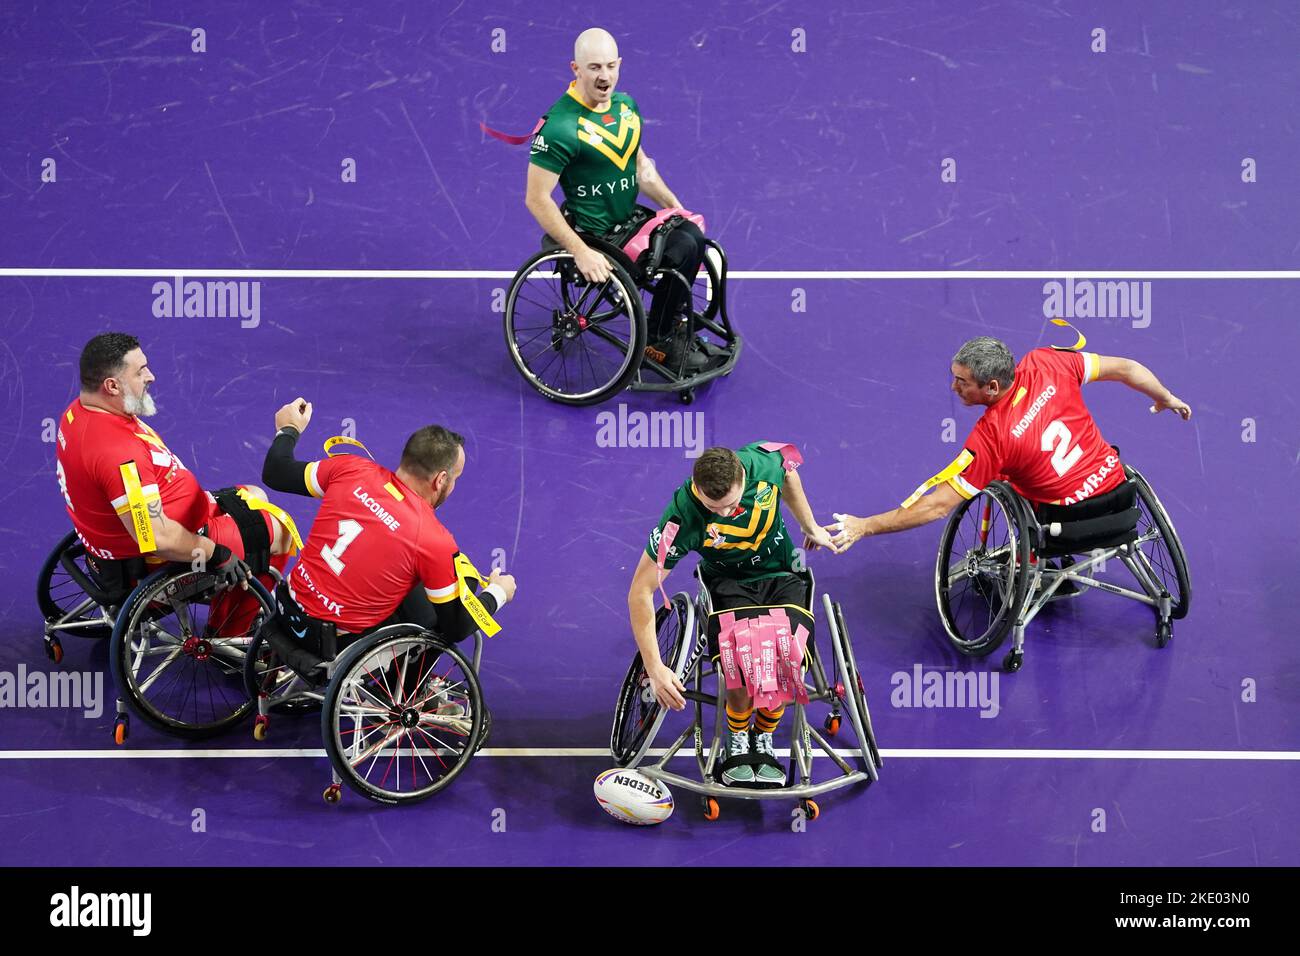 Australien gewinnt einen Versuch während des Wheelchair Rugby League World Cup-Spiels der Gruppe A in der Copper Box Arena, London. Bilddatum: Mittwoch, 9. November 2022. Stockfoto